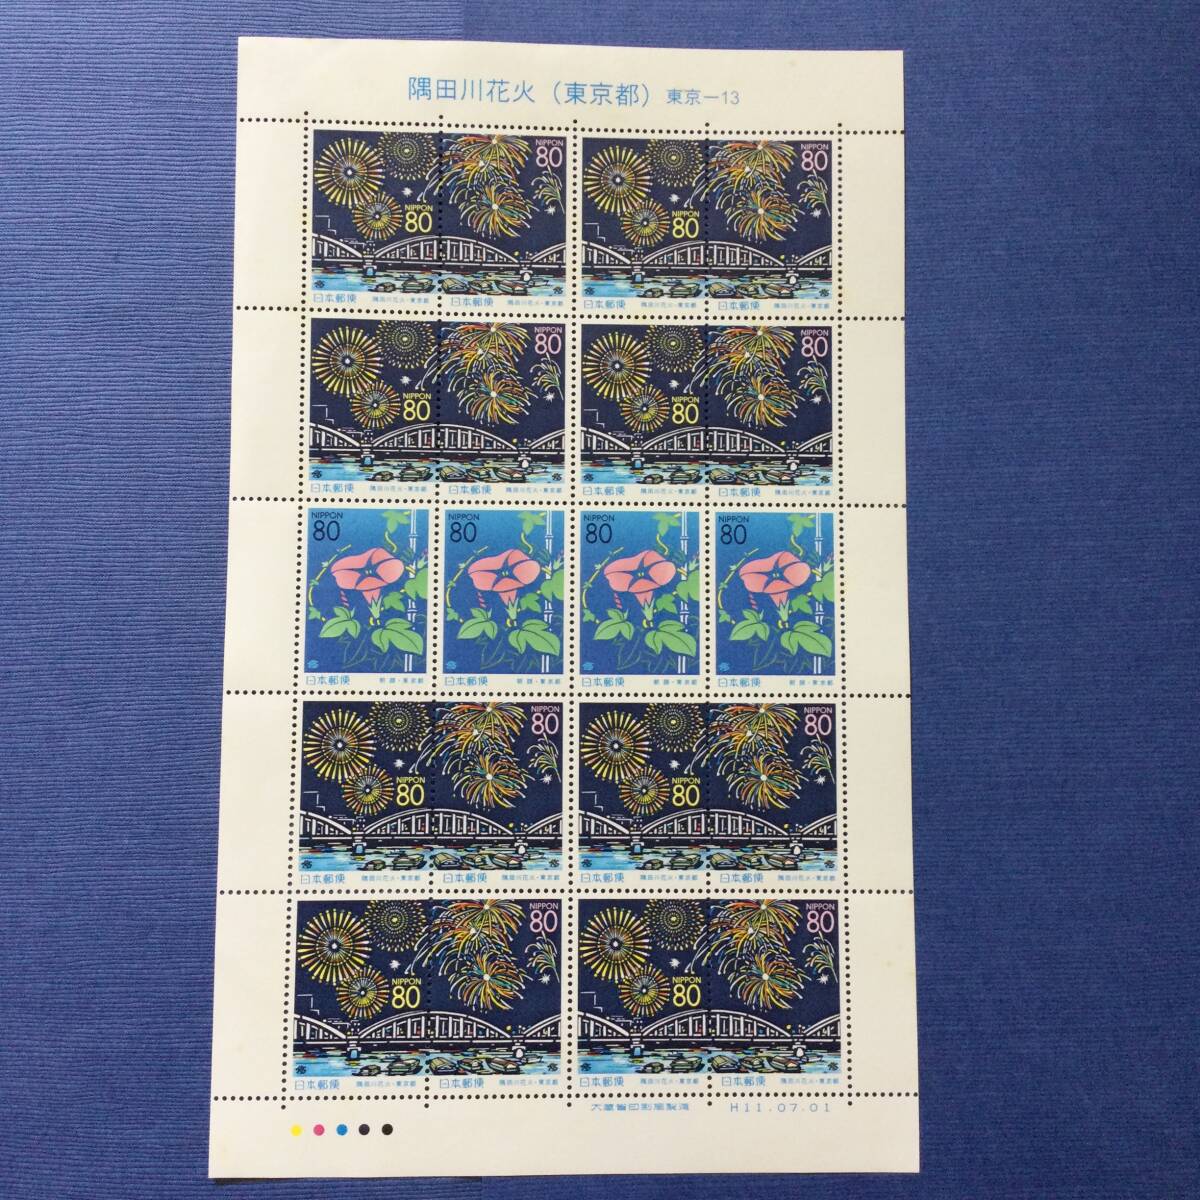 切手シート 隅田川花火(東京都)東京-13 1999年 80円20枚の画像1